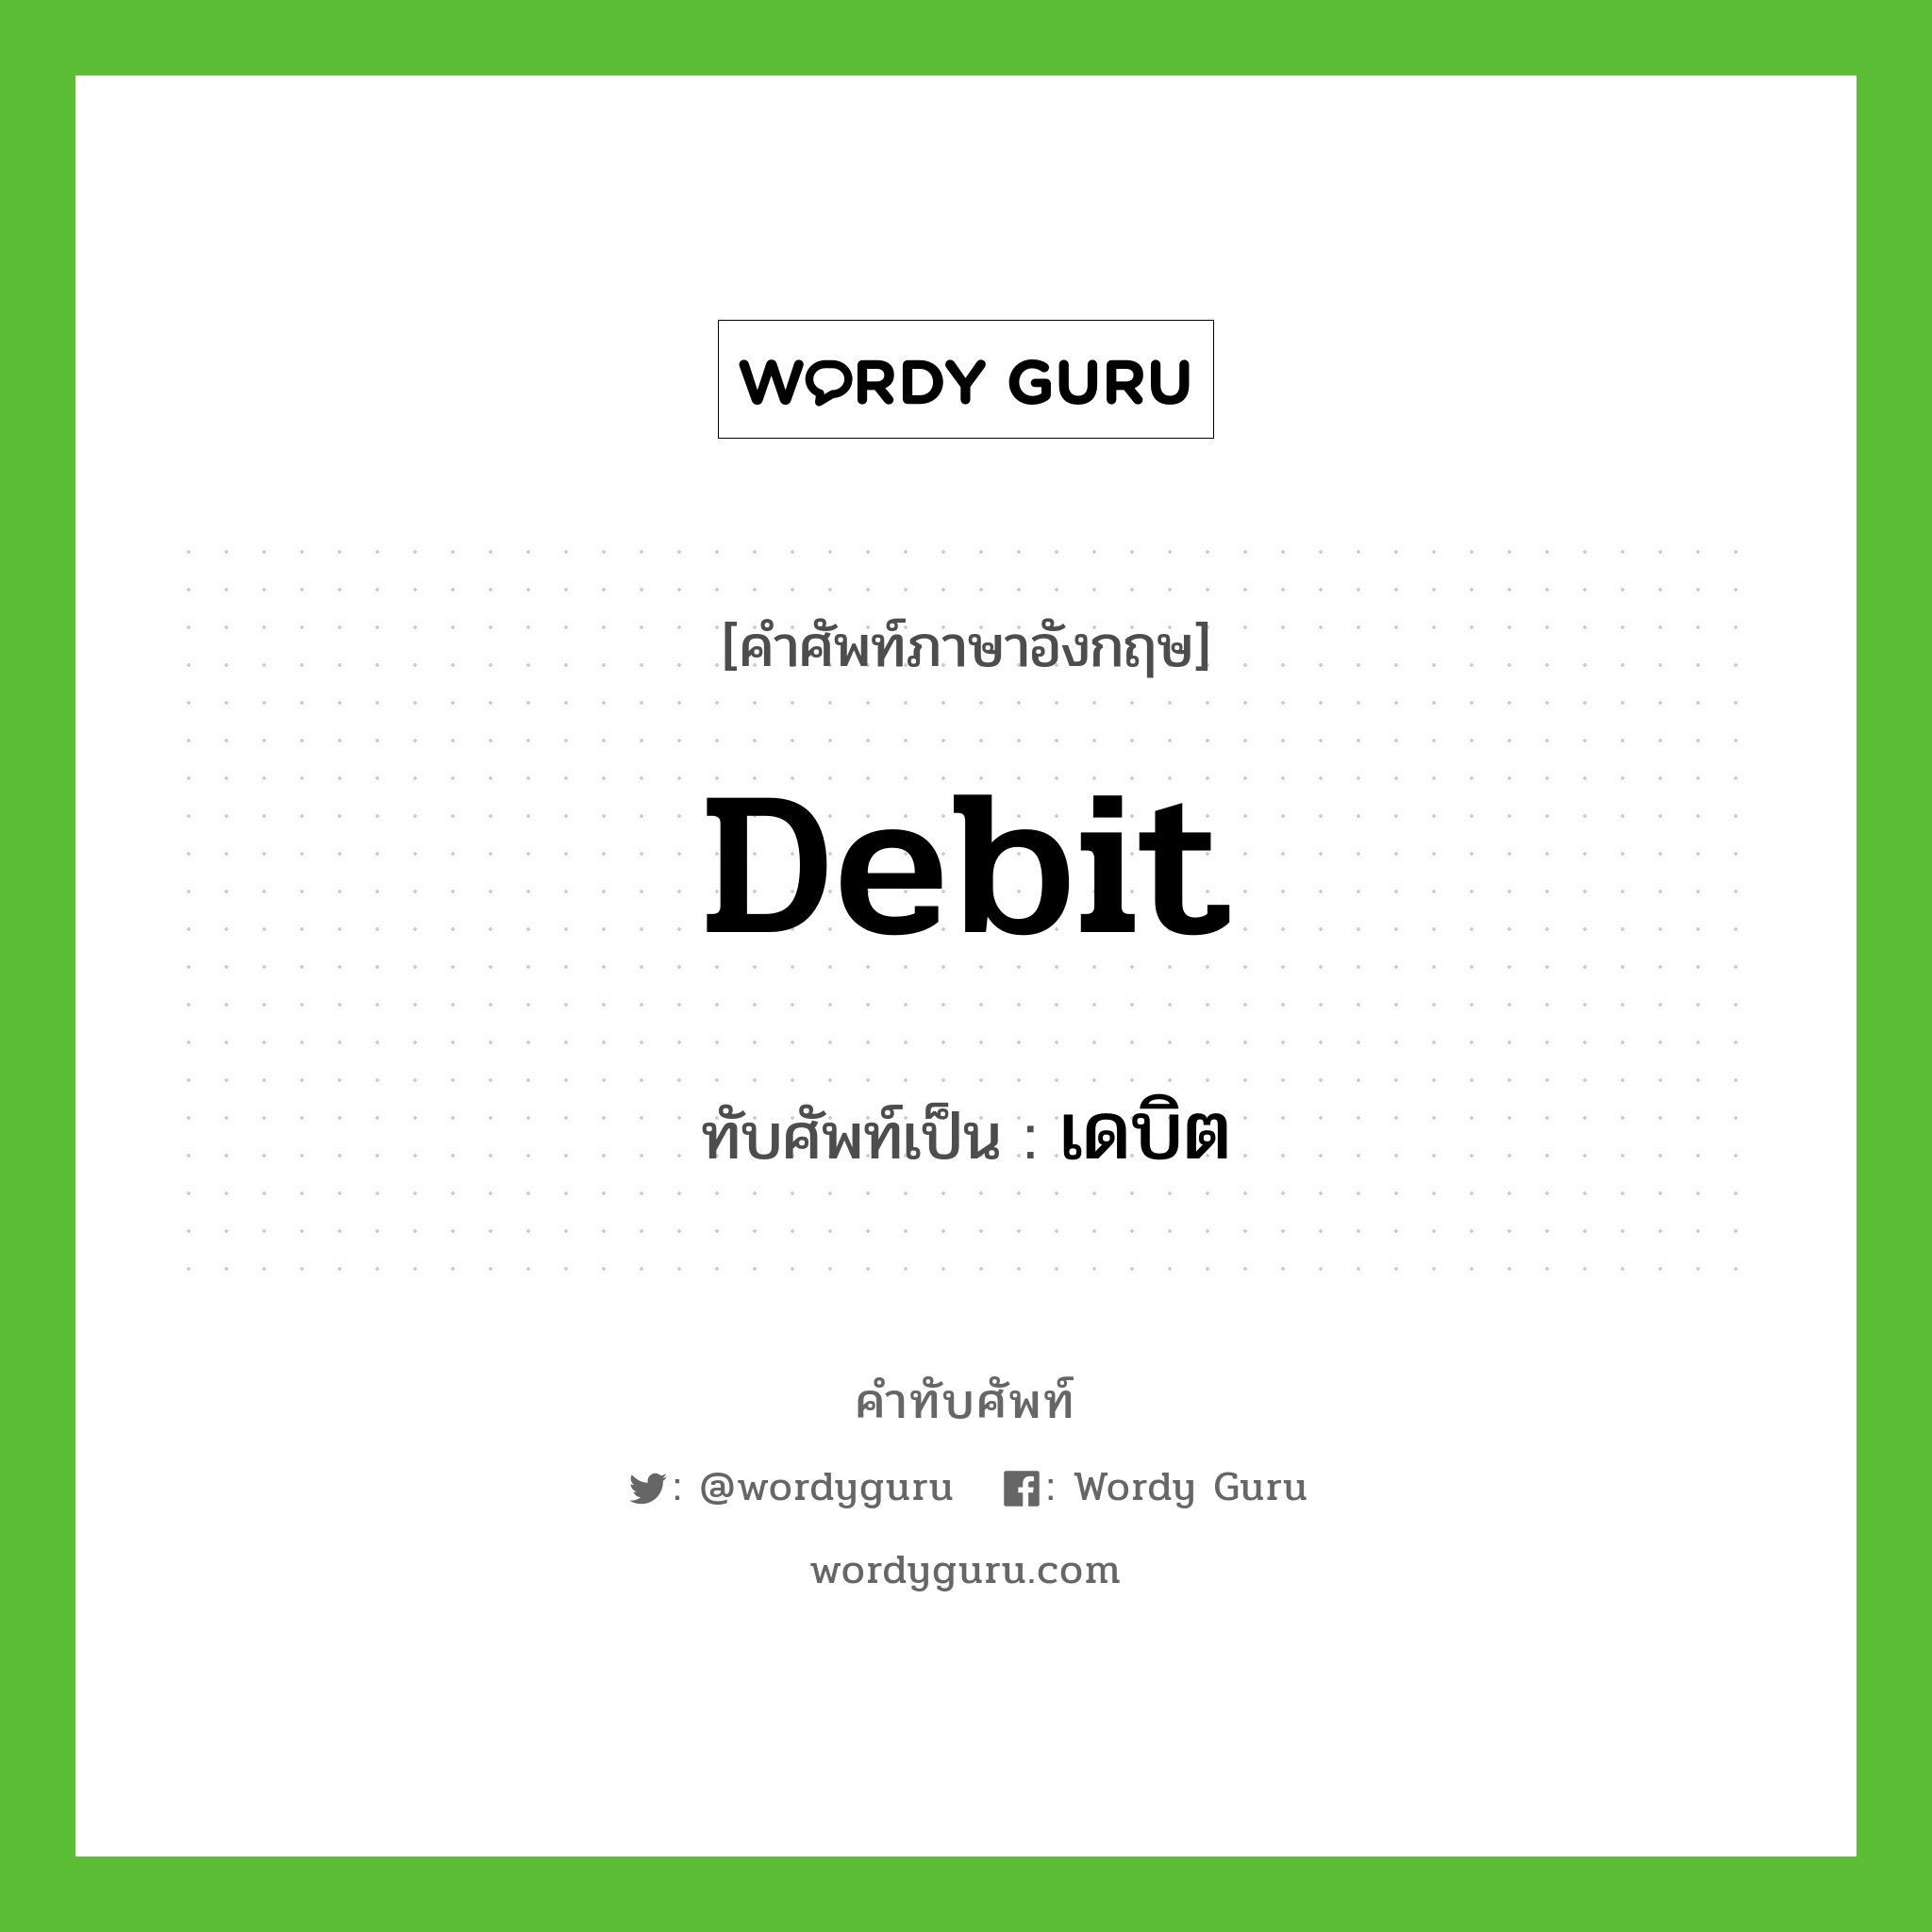 debit เขียนเป็นคำไทยว่าอะไร?, คำศัพท์ภาษาอังกฤษ debit ทับศัพท์เป็น เดบิต